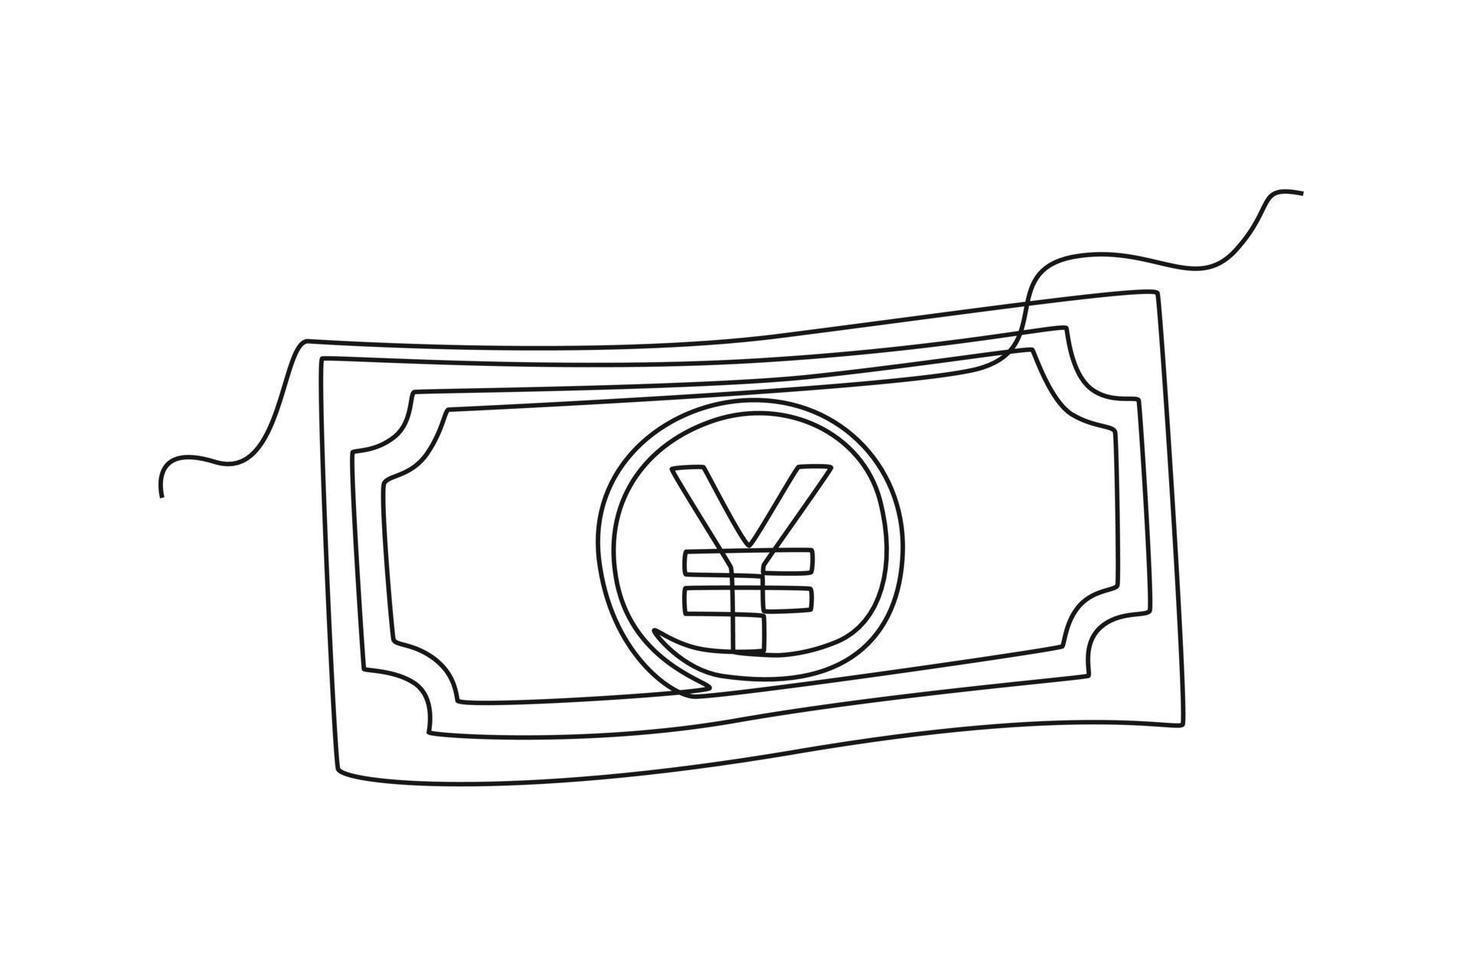 Célibataire une ligne dessin yen papier devise de Japon. pays devise concept continu ligne dessiner conception graphique vecteur illustration